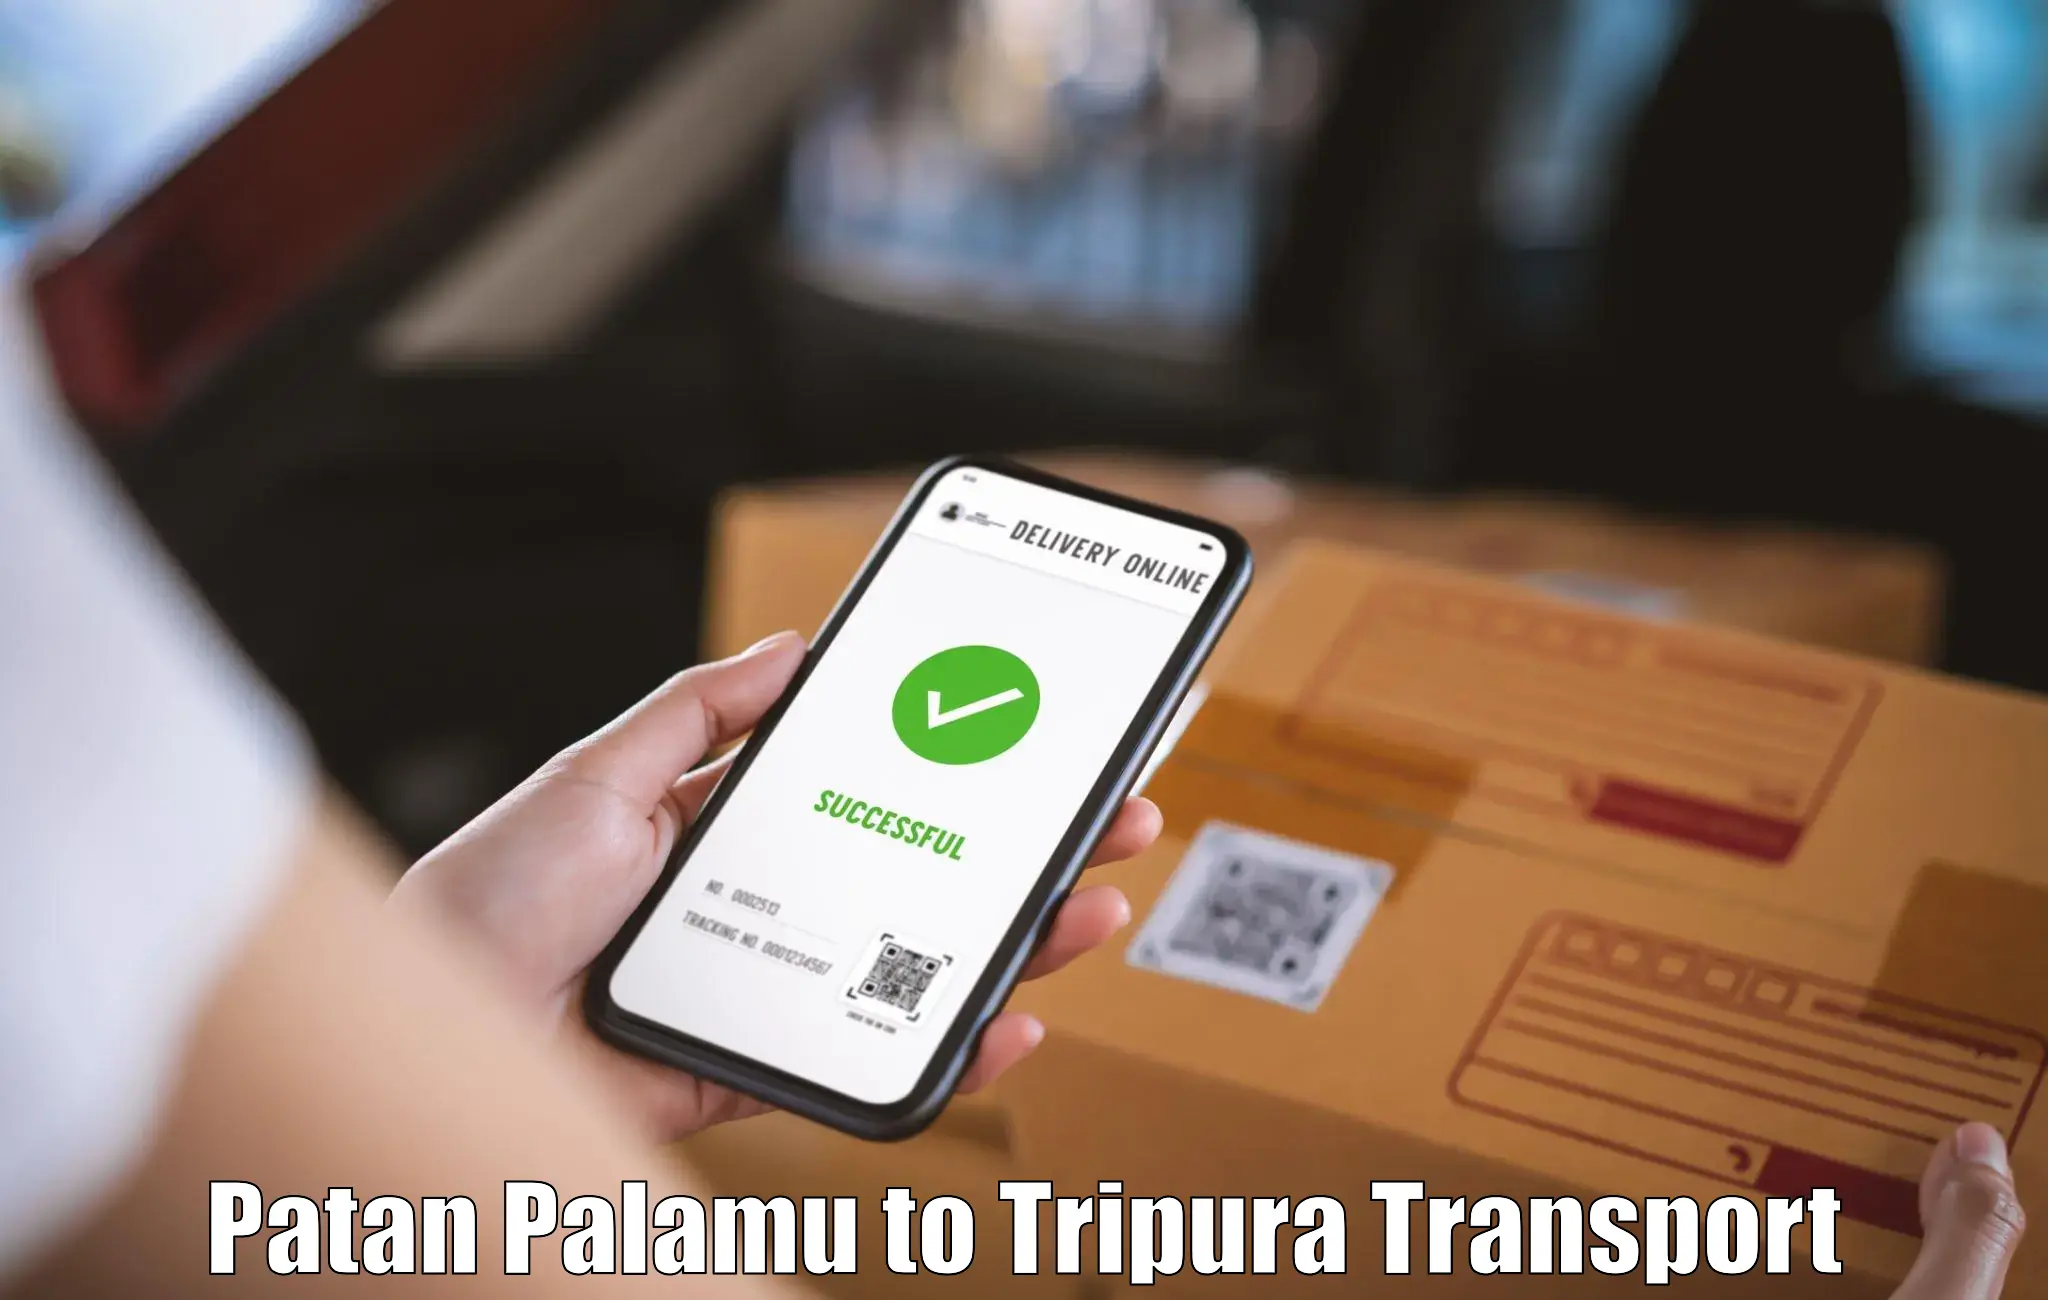 Domestic transport services Patan Palamu to Ambassa